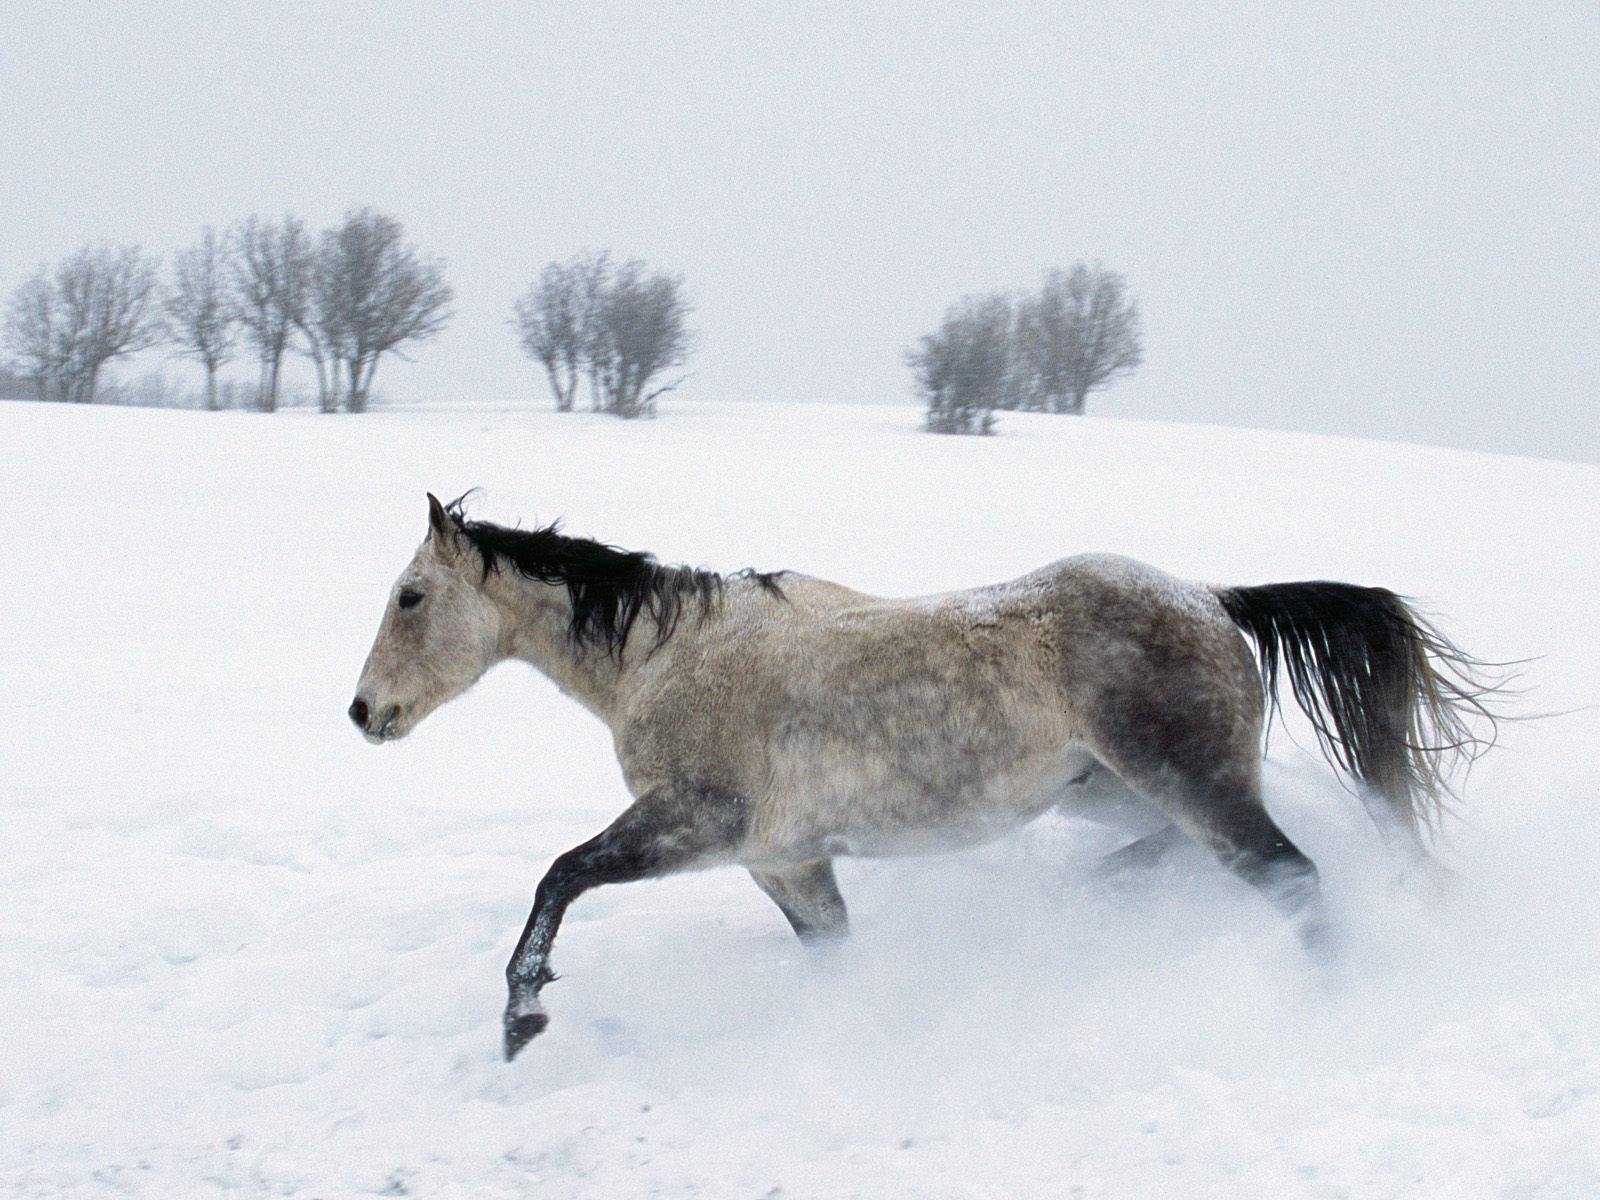 Horse In The Snow Wallpaper Stock Photos